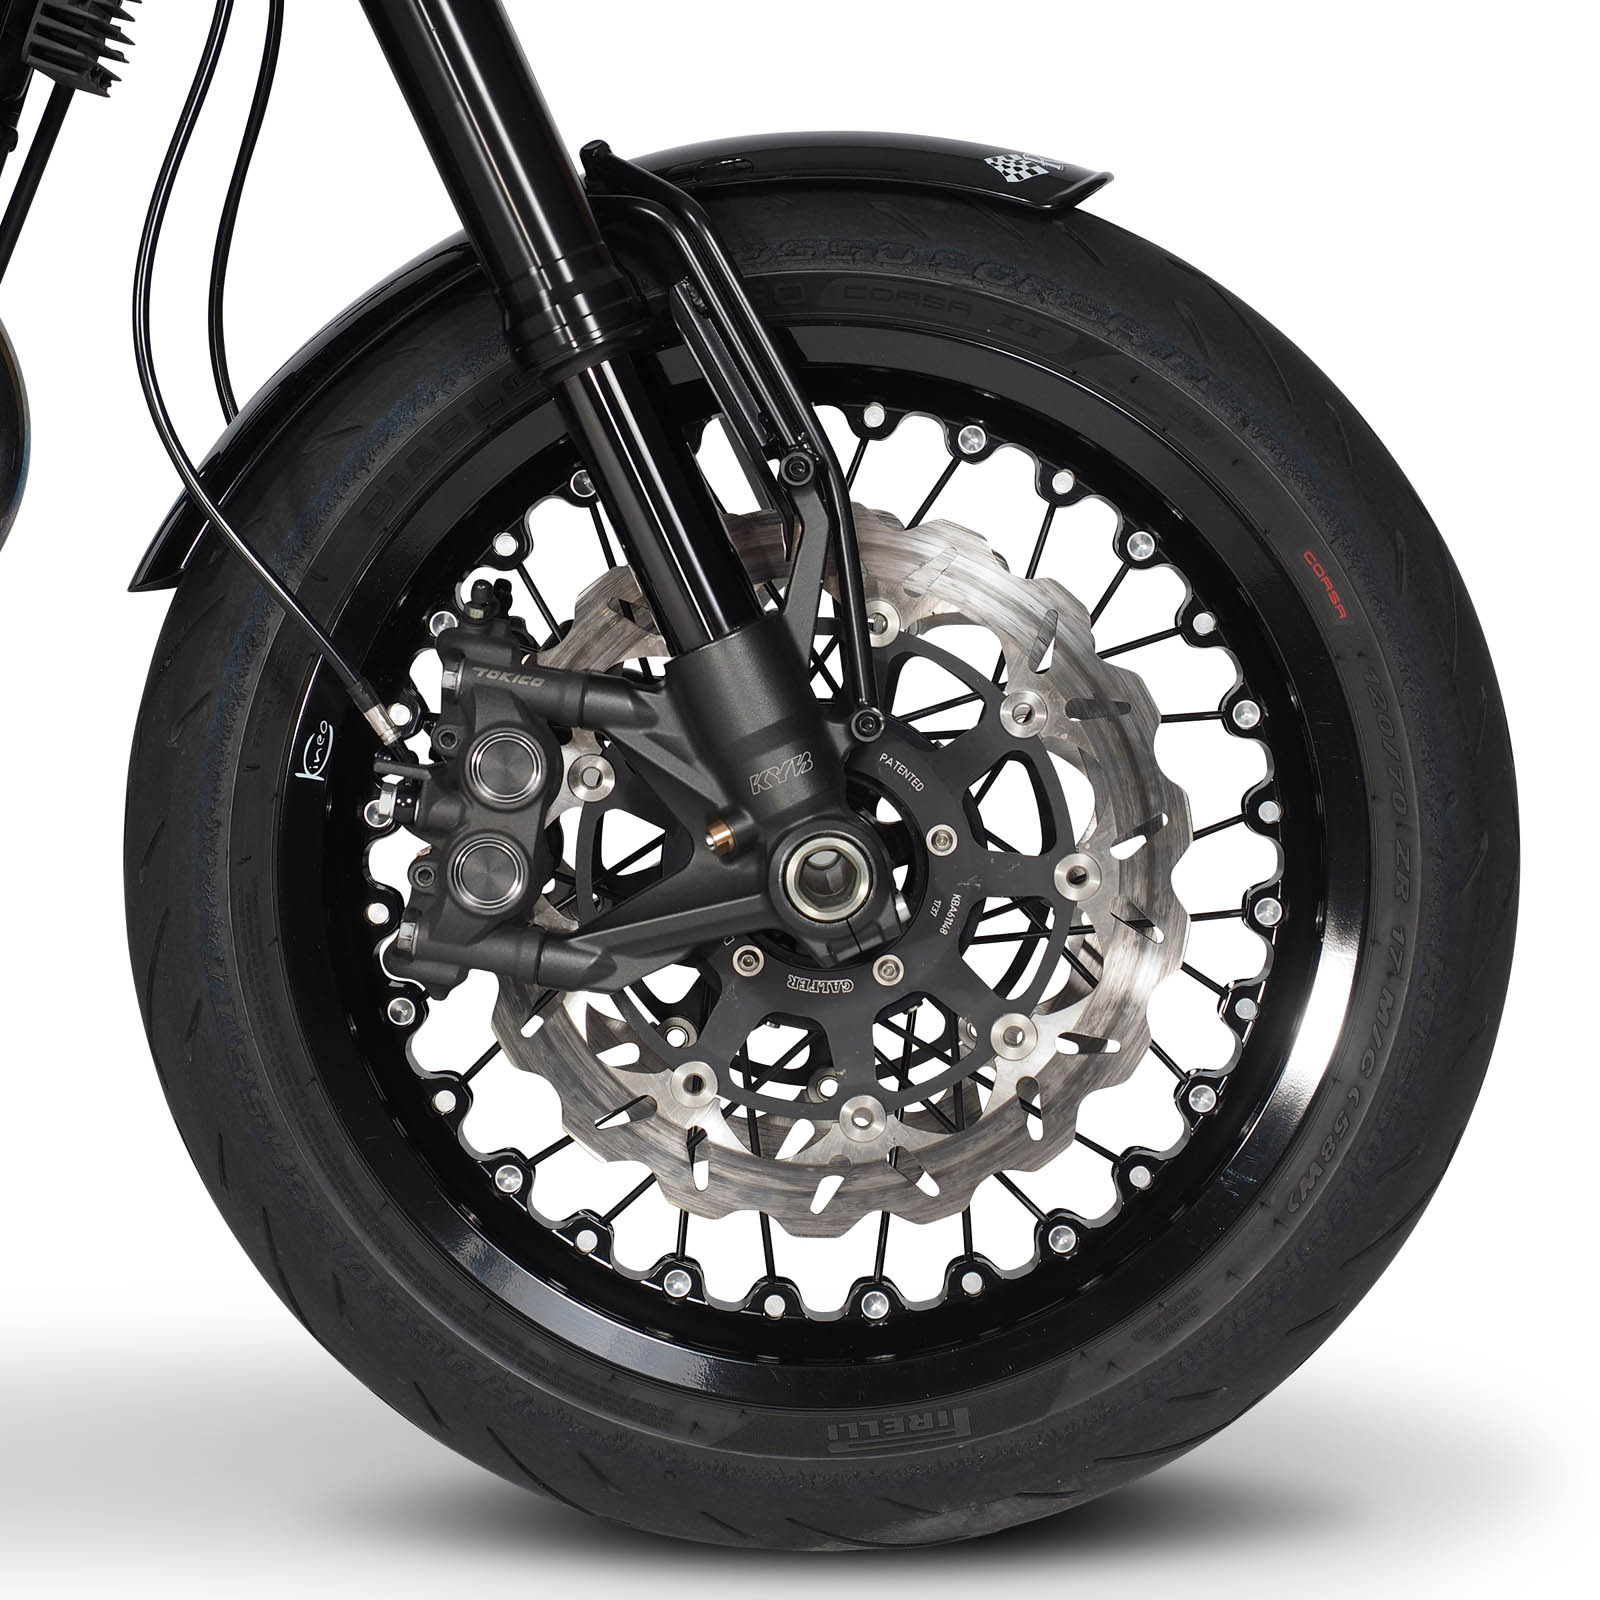 Kineo für Thruxton | Räder / Felgen | Räder / Felgen | TRIUMPH AC / BIS BJ  2015 | Classicbike Raisch